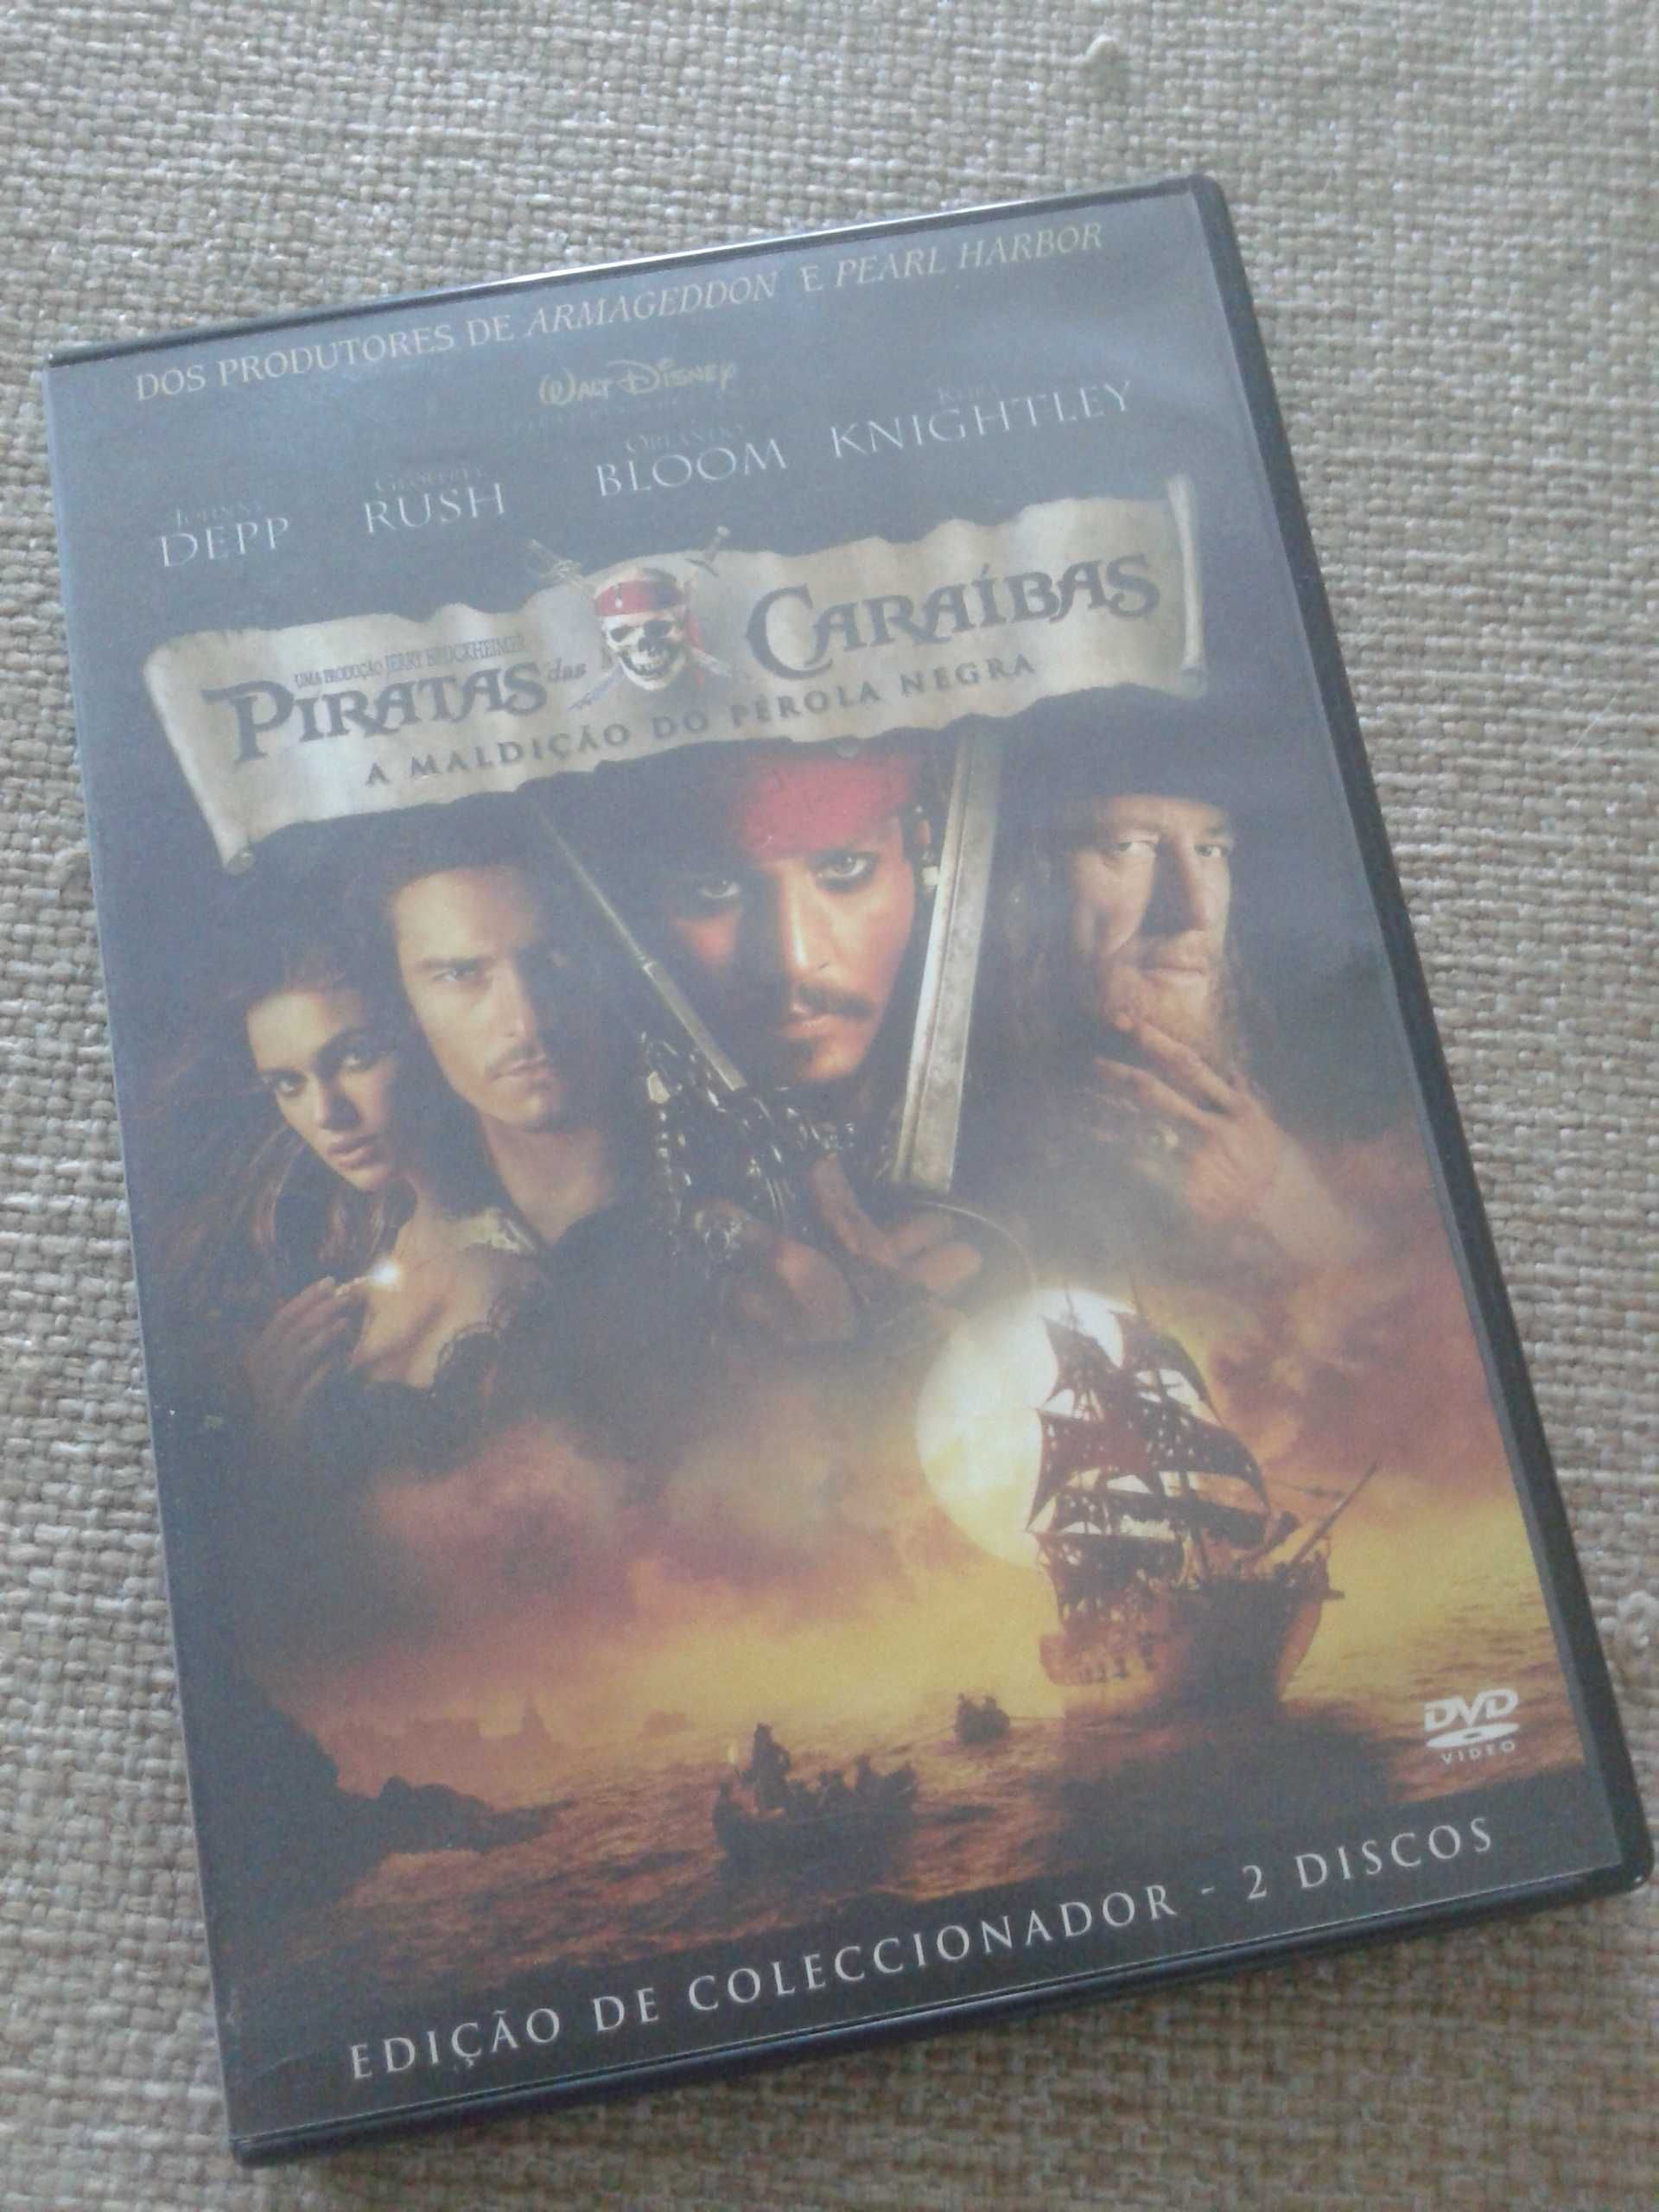 Piratas das Caraíbas - A Maldição do Pérola Negra (2 DVD's)